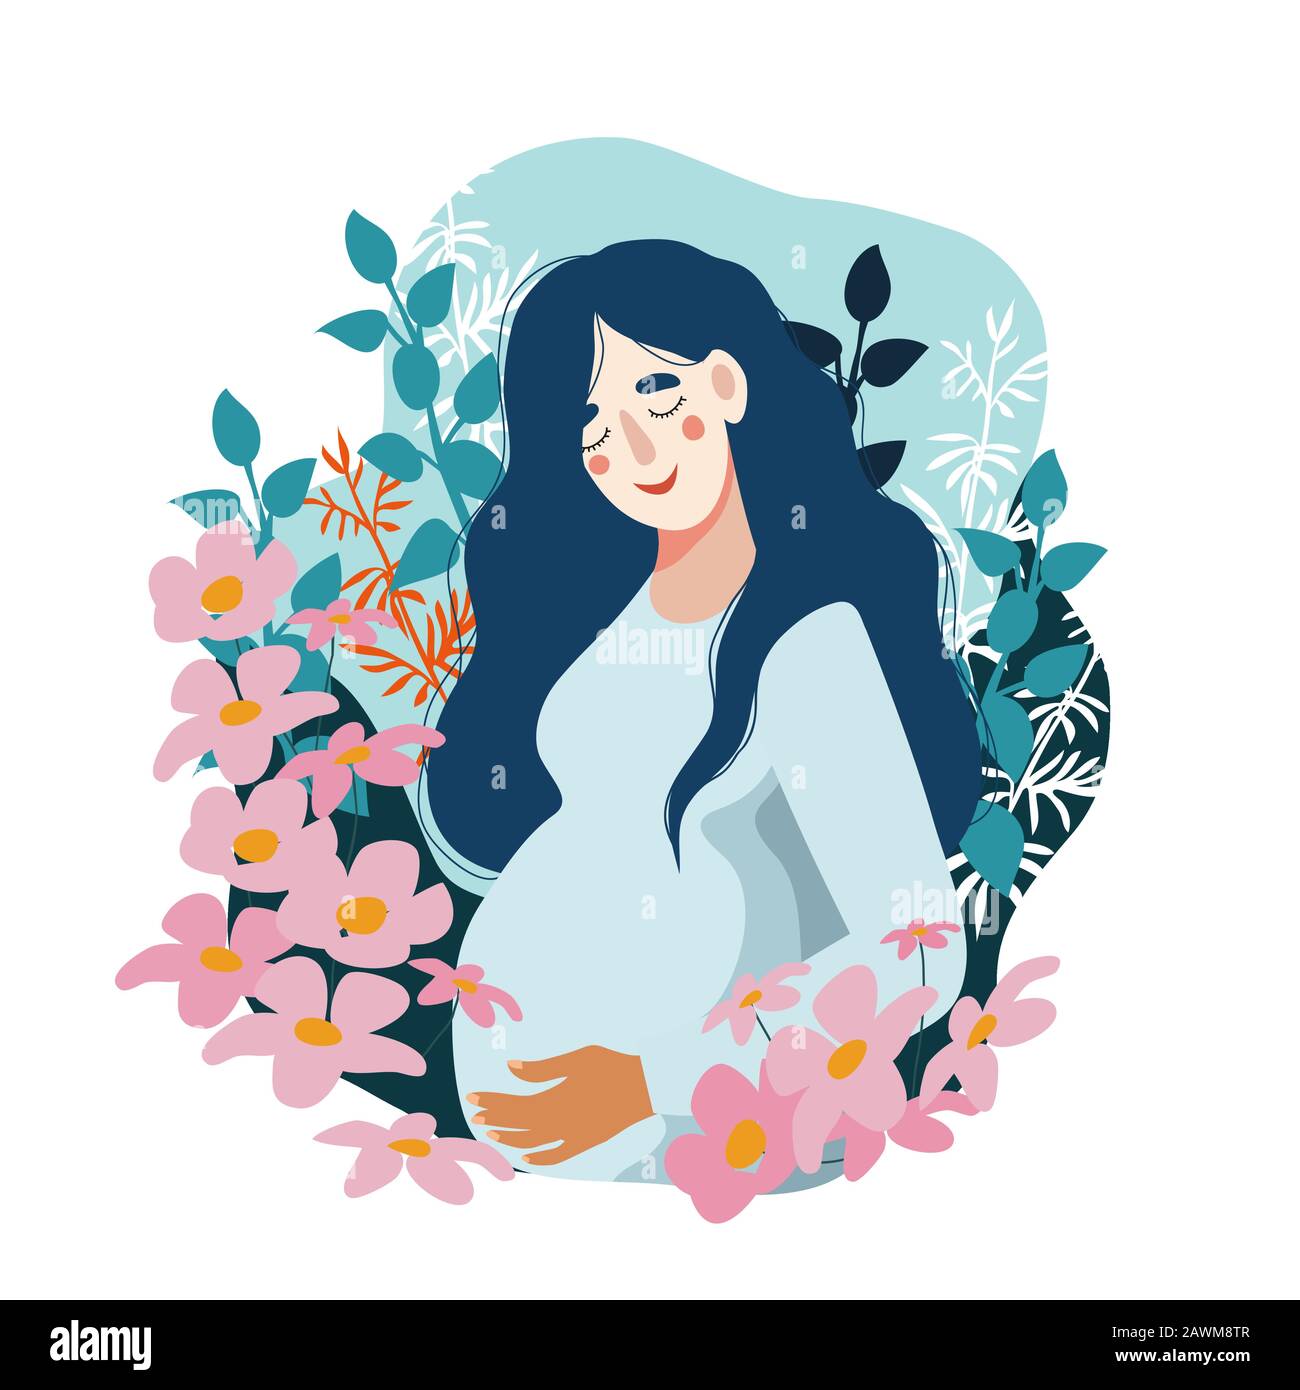 Bonne Fête Des Mères. Femme enceinte entourée de nombreuses fleurs. Illustration plate vectorielle isolée. Illustration de Vecteur